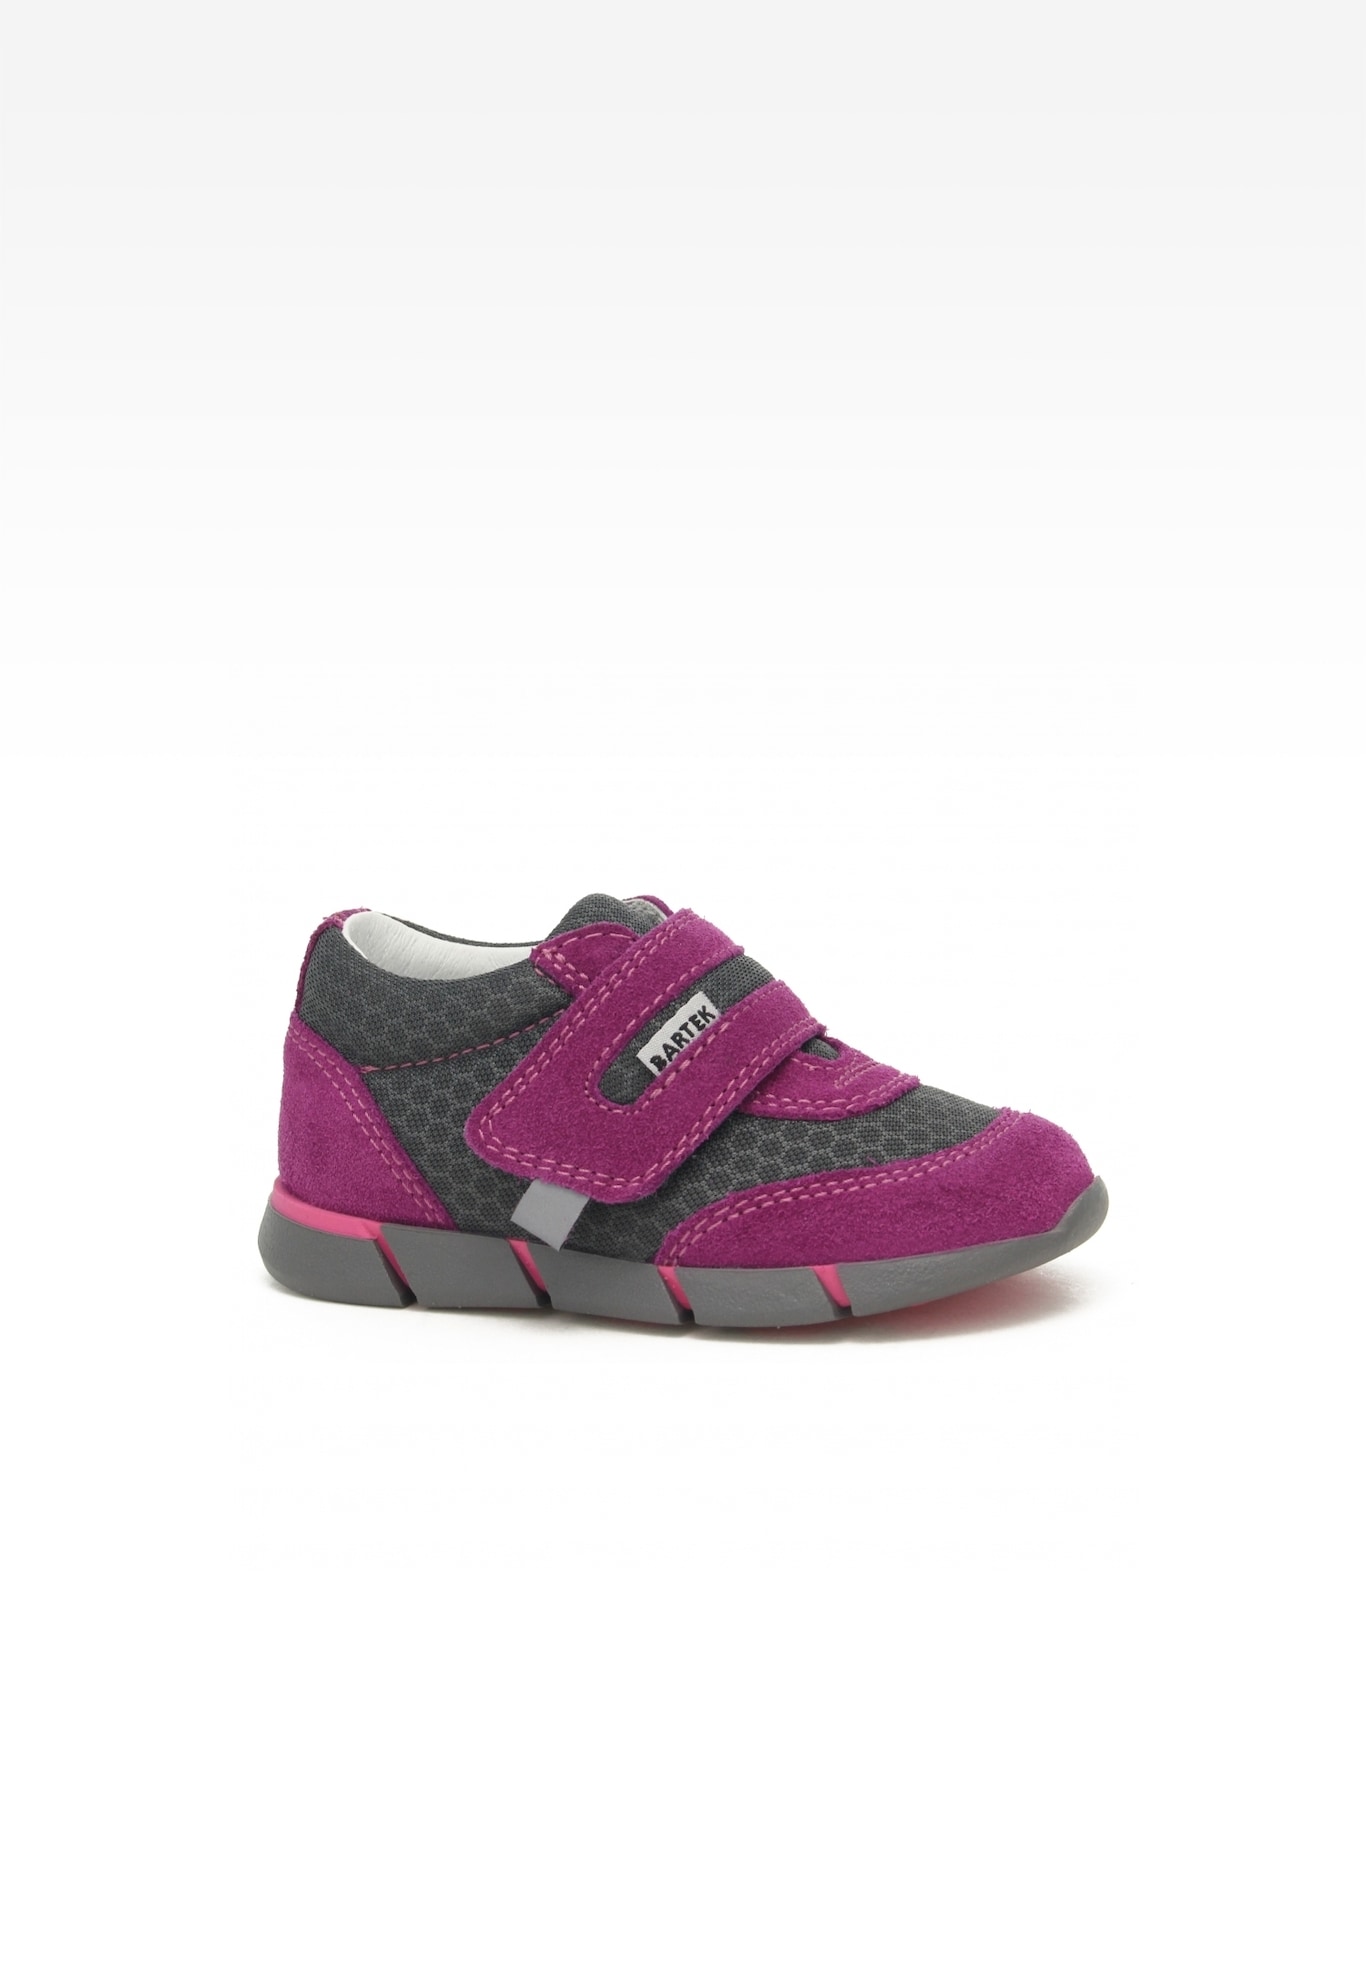 Sneakers BARTEK 11949018, dla dziewcząt, różowo-szary